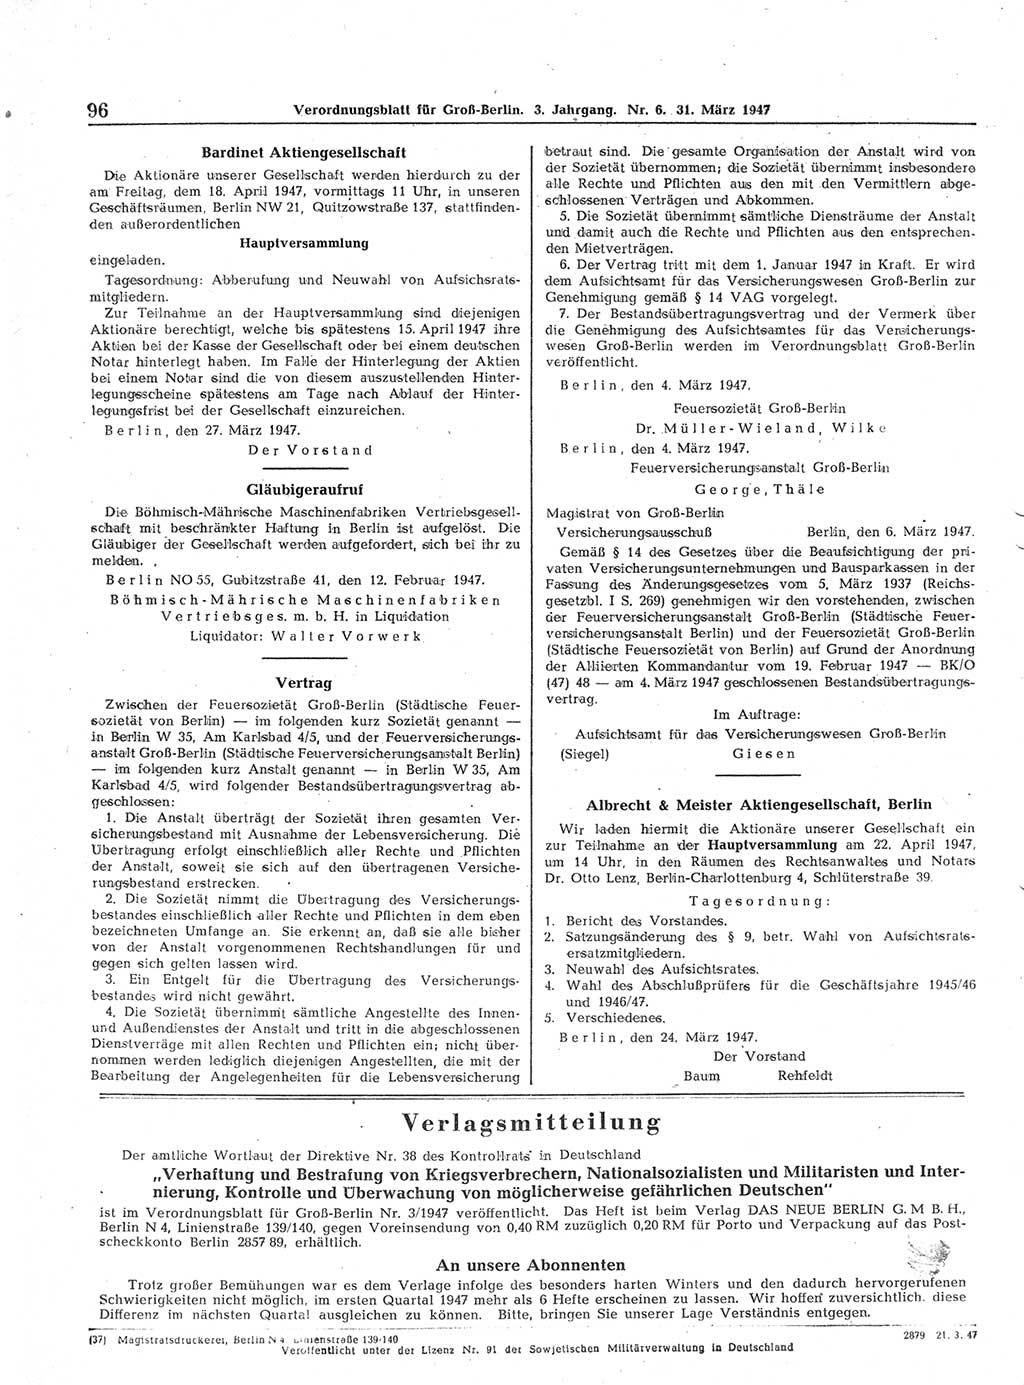 Verordnungsblatt (VOBl.) für Groß-Berlin 1947, Seite 96 (VOBl. Bln. 1947, S. 96)